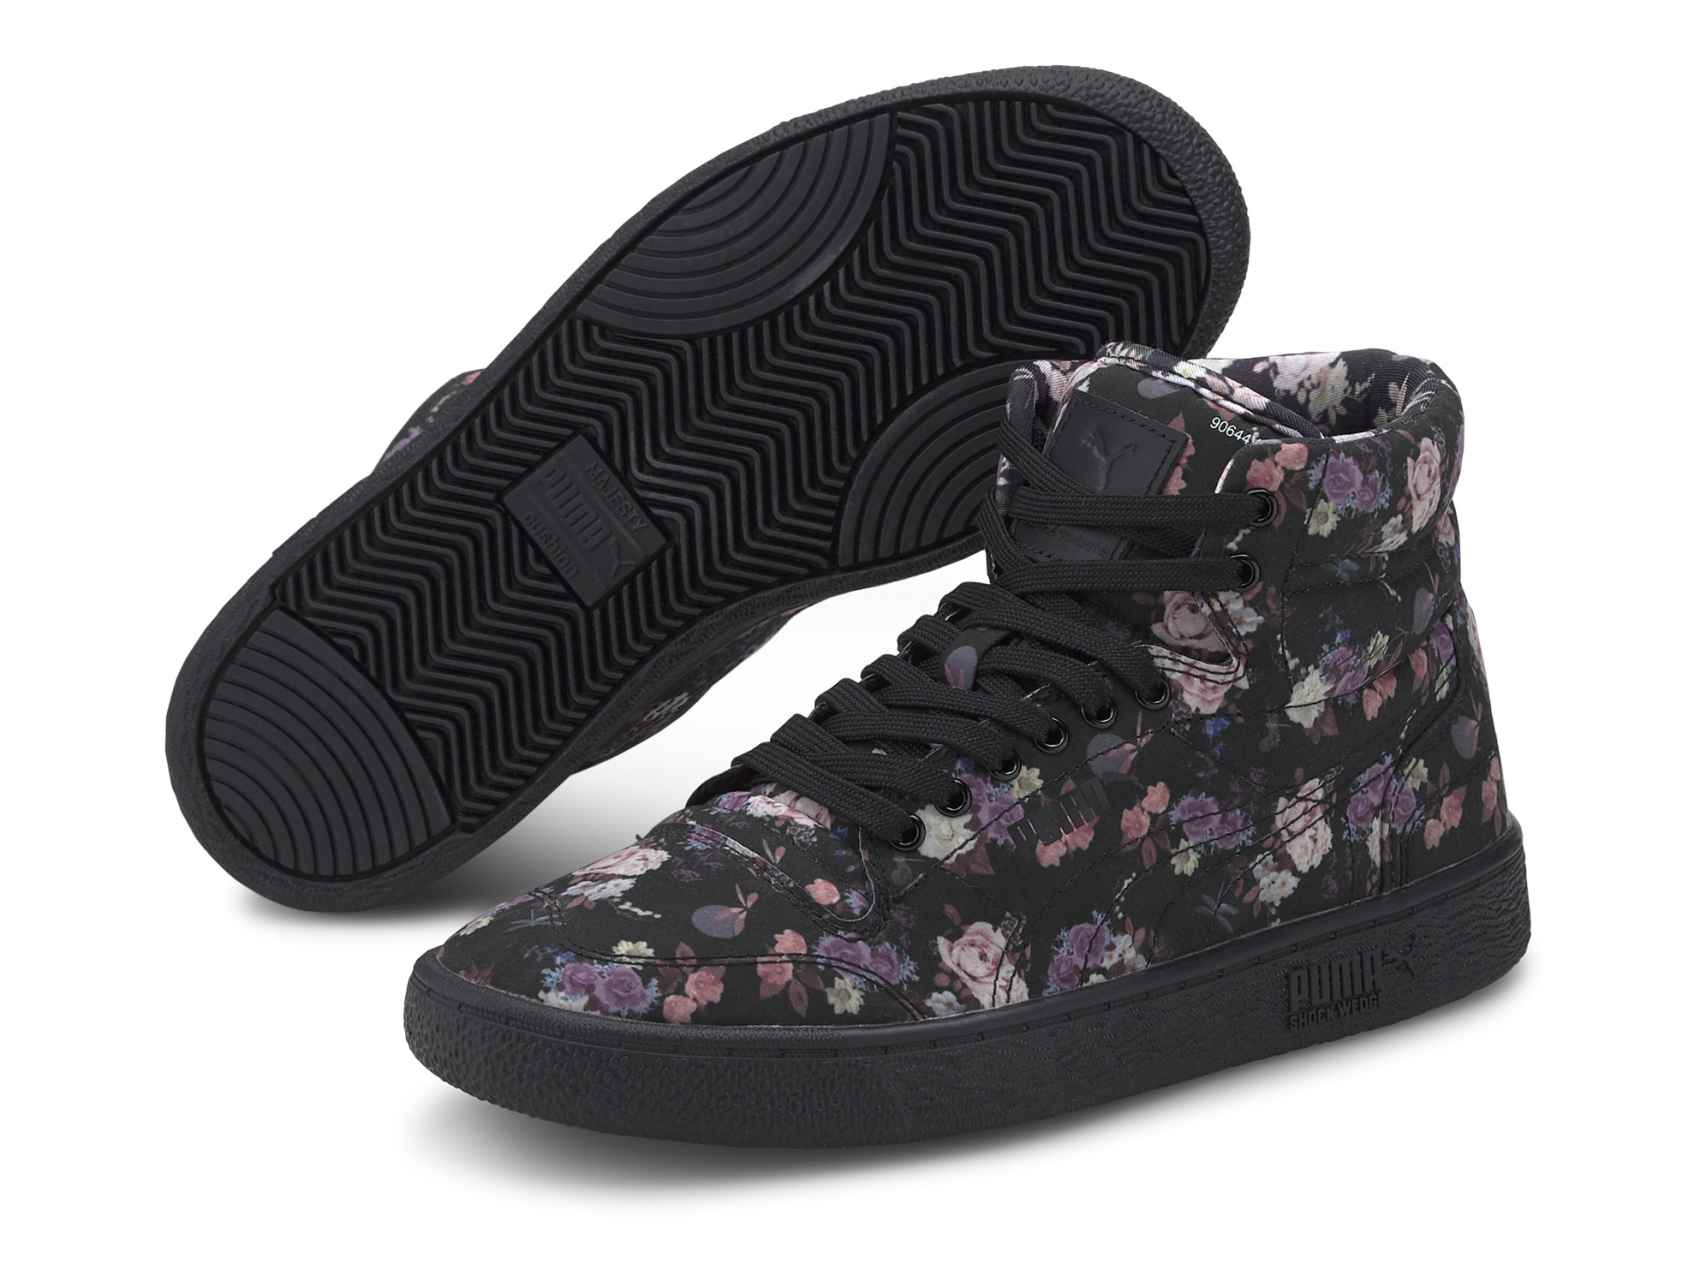 Las zapatillas con estampado floral de Puma.